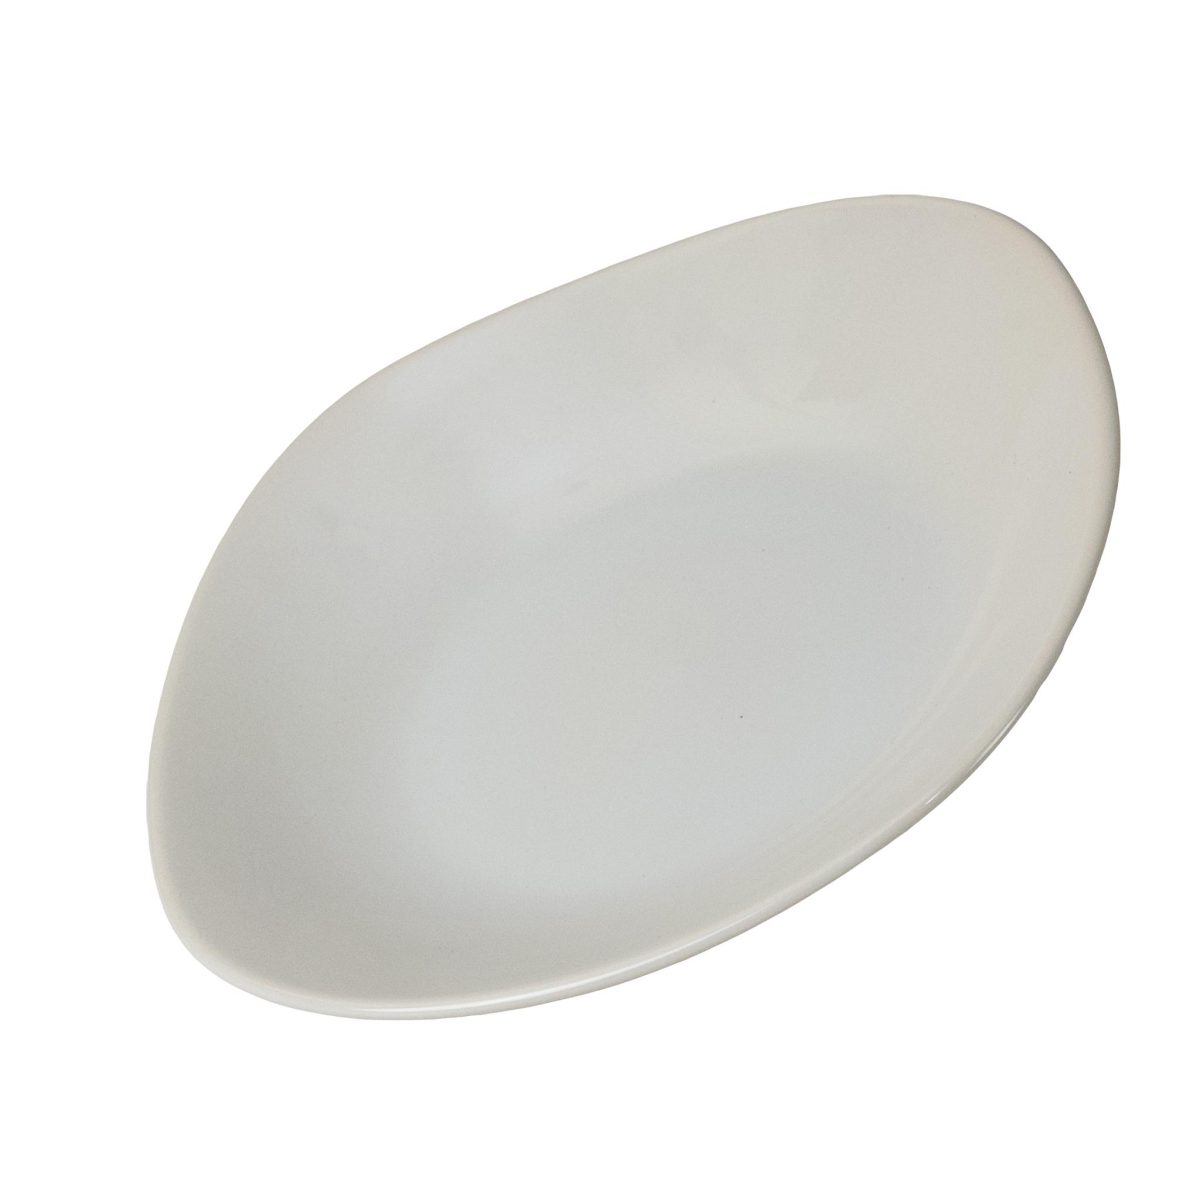 Tiefer Teller, Cesiro, quadratisch, 22 cm, glänzendes Weiß